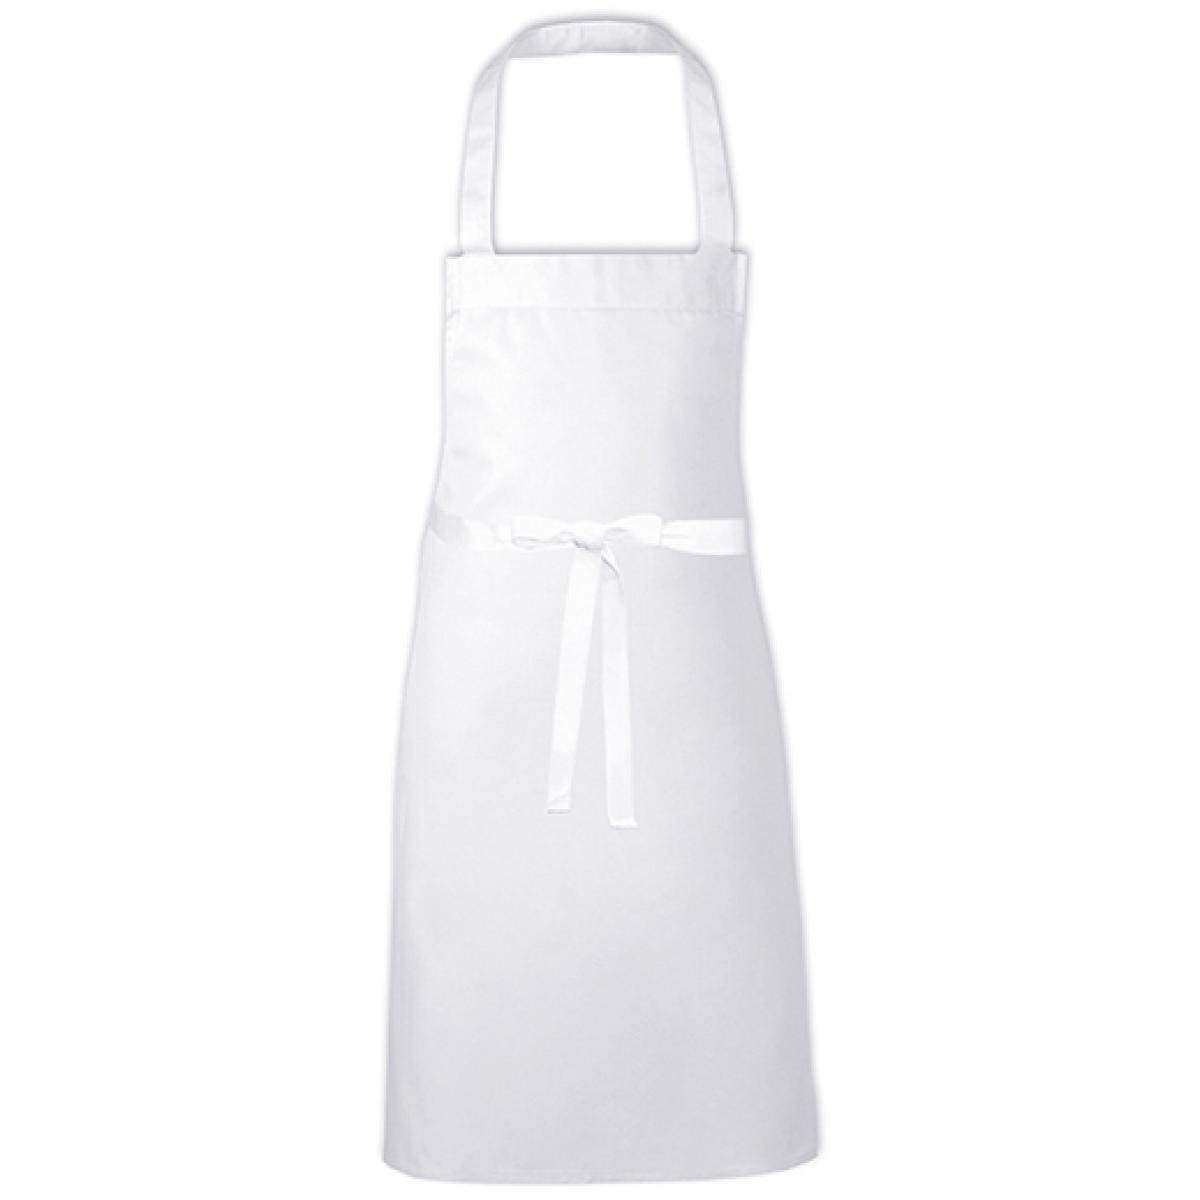 Hersteller: Link Kitchen Wear Herstellernummer: BBQ8073 Artikelbezeichnung: Barbecue Apron - 73 x 80 cm - Waschbar bis 60 °C Farbe: White